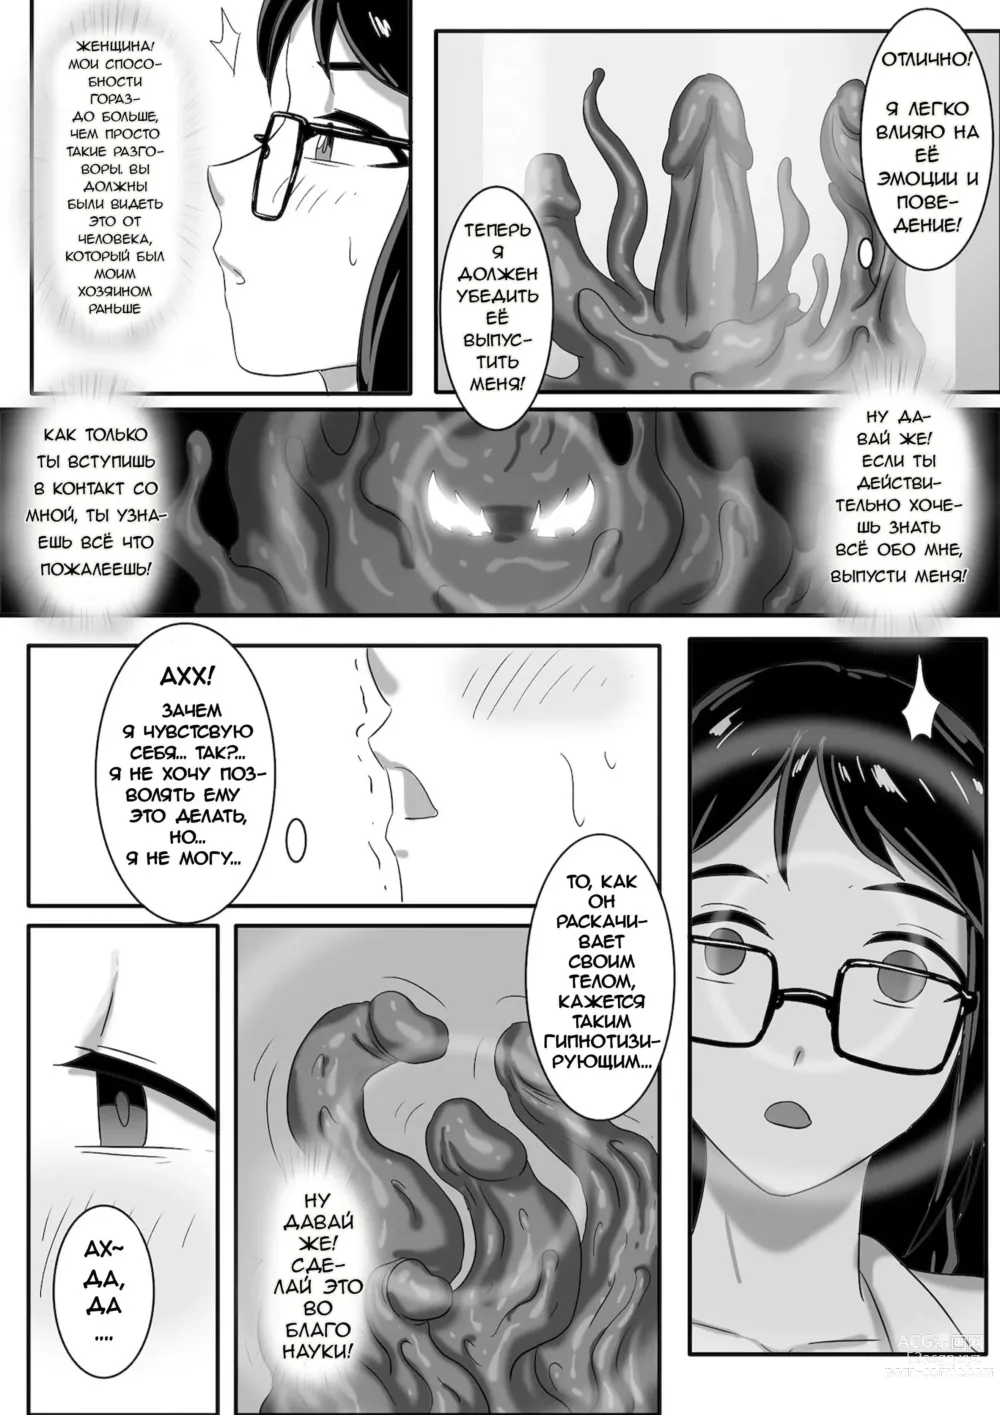 Page 9 of manga Переведено на русском